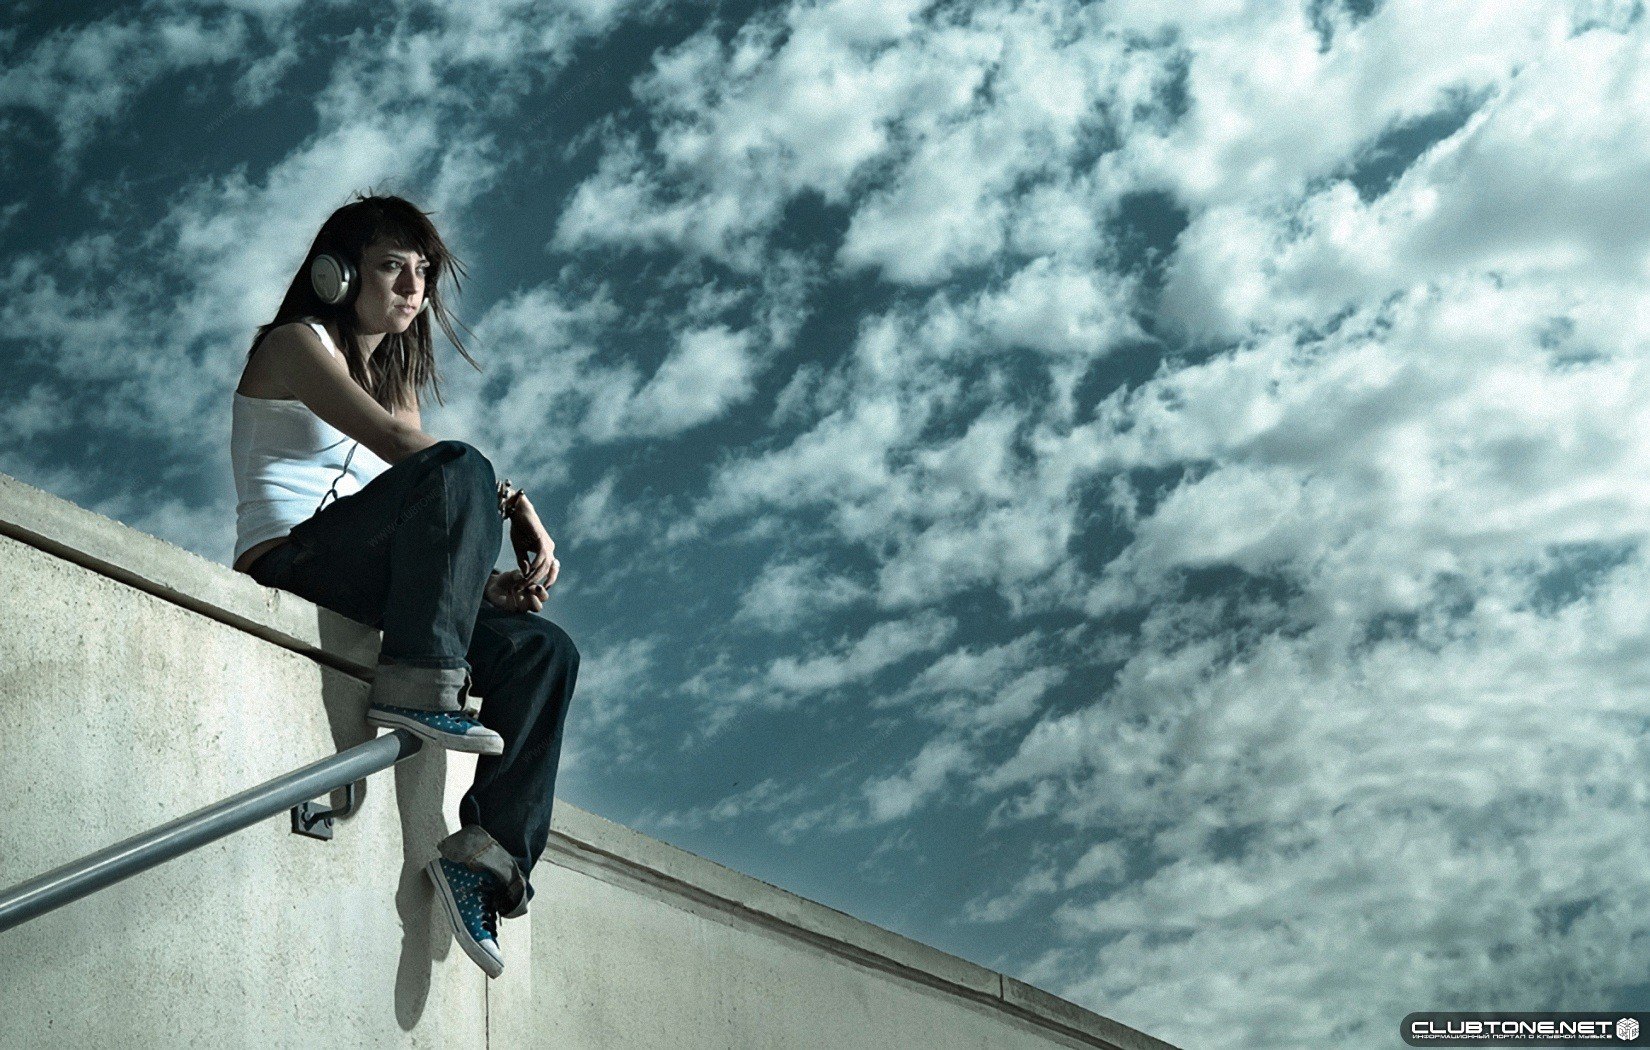 Слушать жизнь похожа на. Девушка сидит на крыше свесив ноги. Девушка сидит на крыше.